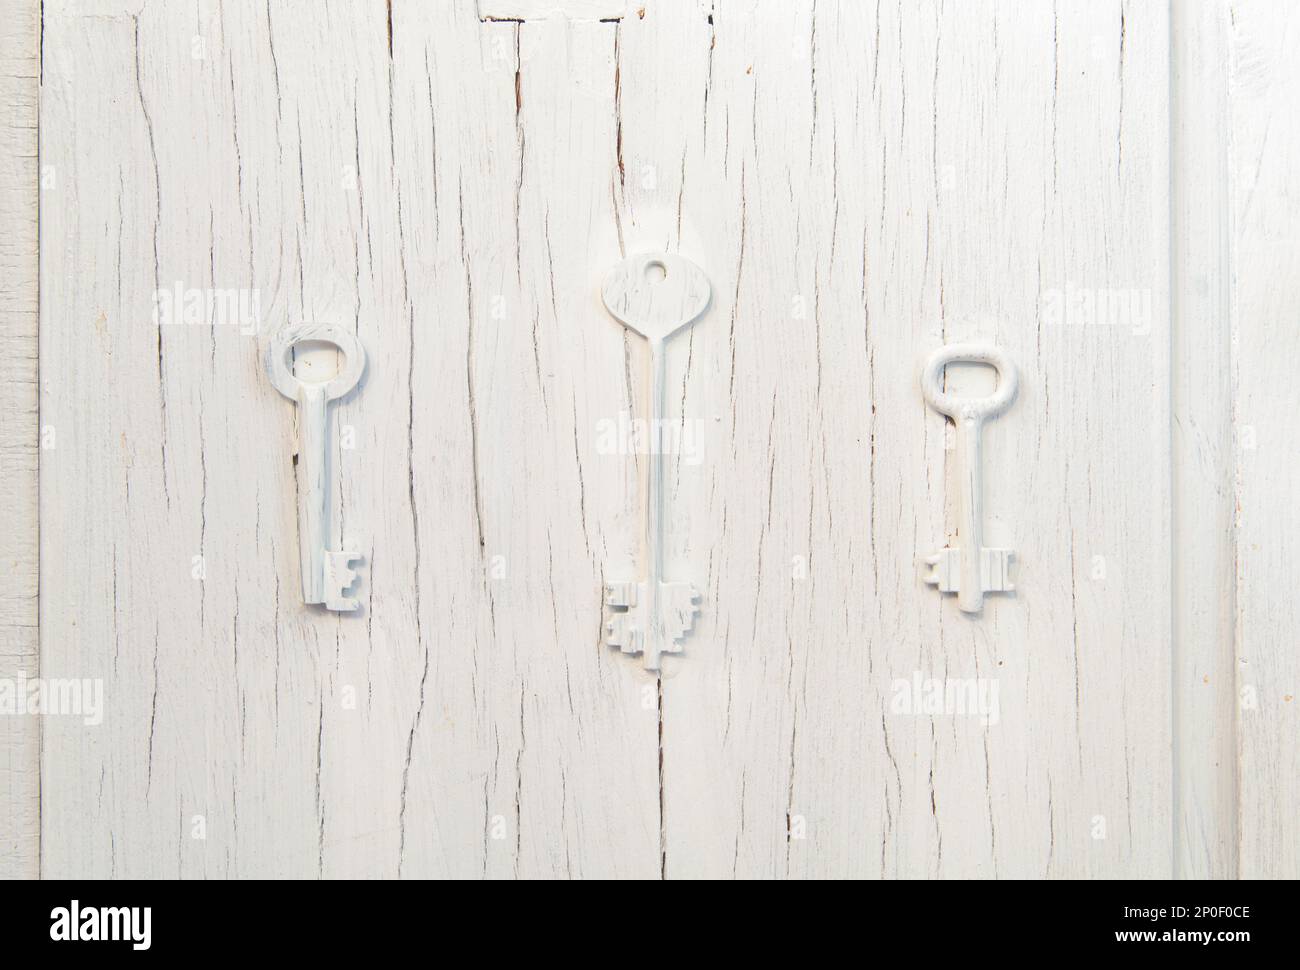 Tres teclas de decoración de moda en una vieja puerta agrietada gris, diseño abstracto vintage cluse-up de fondo. Elección del problema de ruta Foto de stock